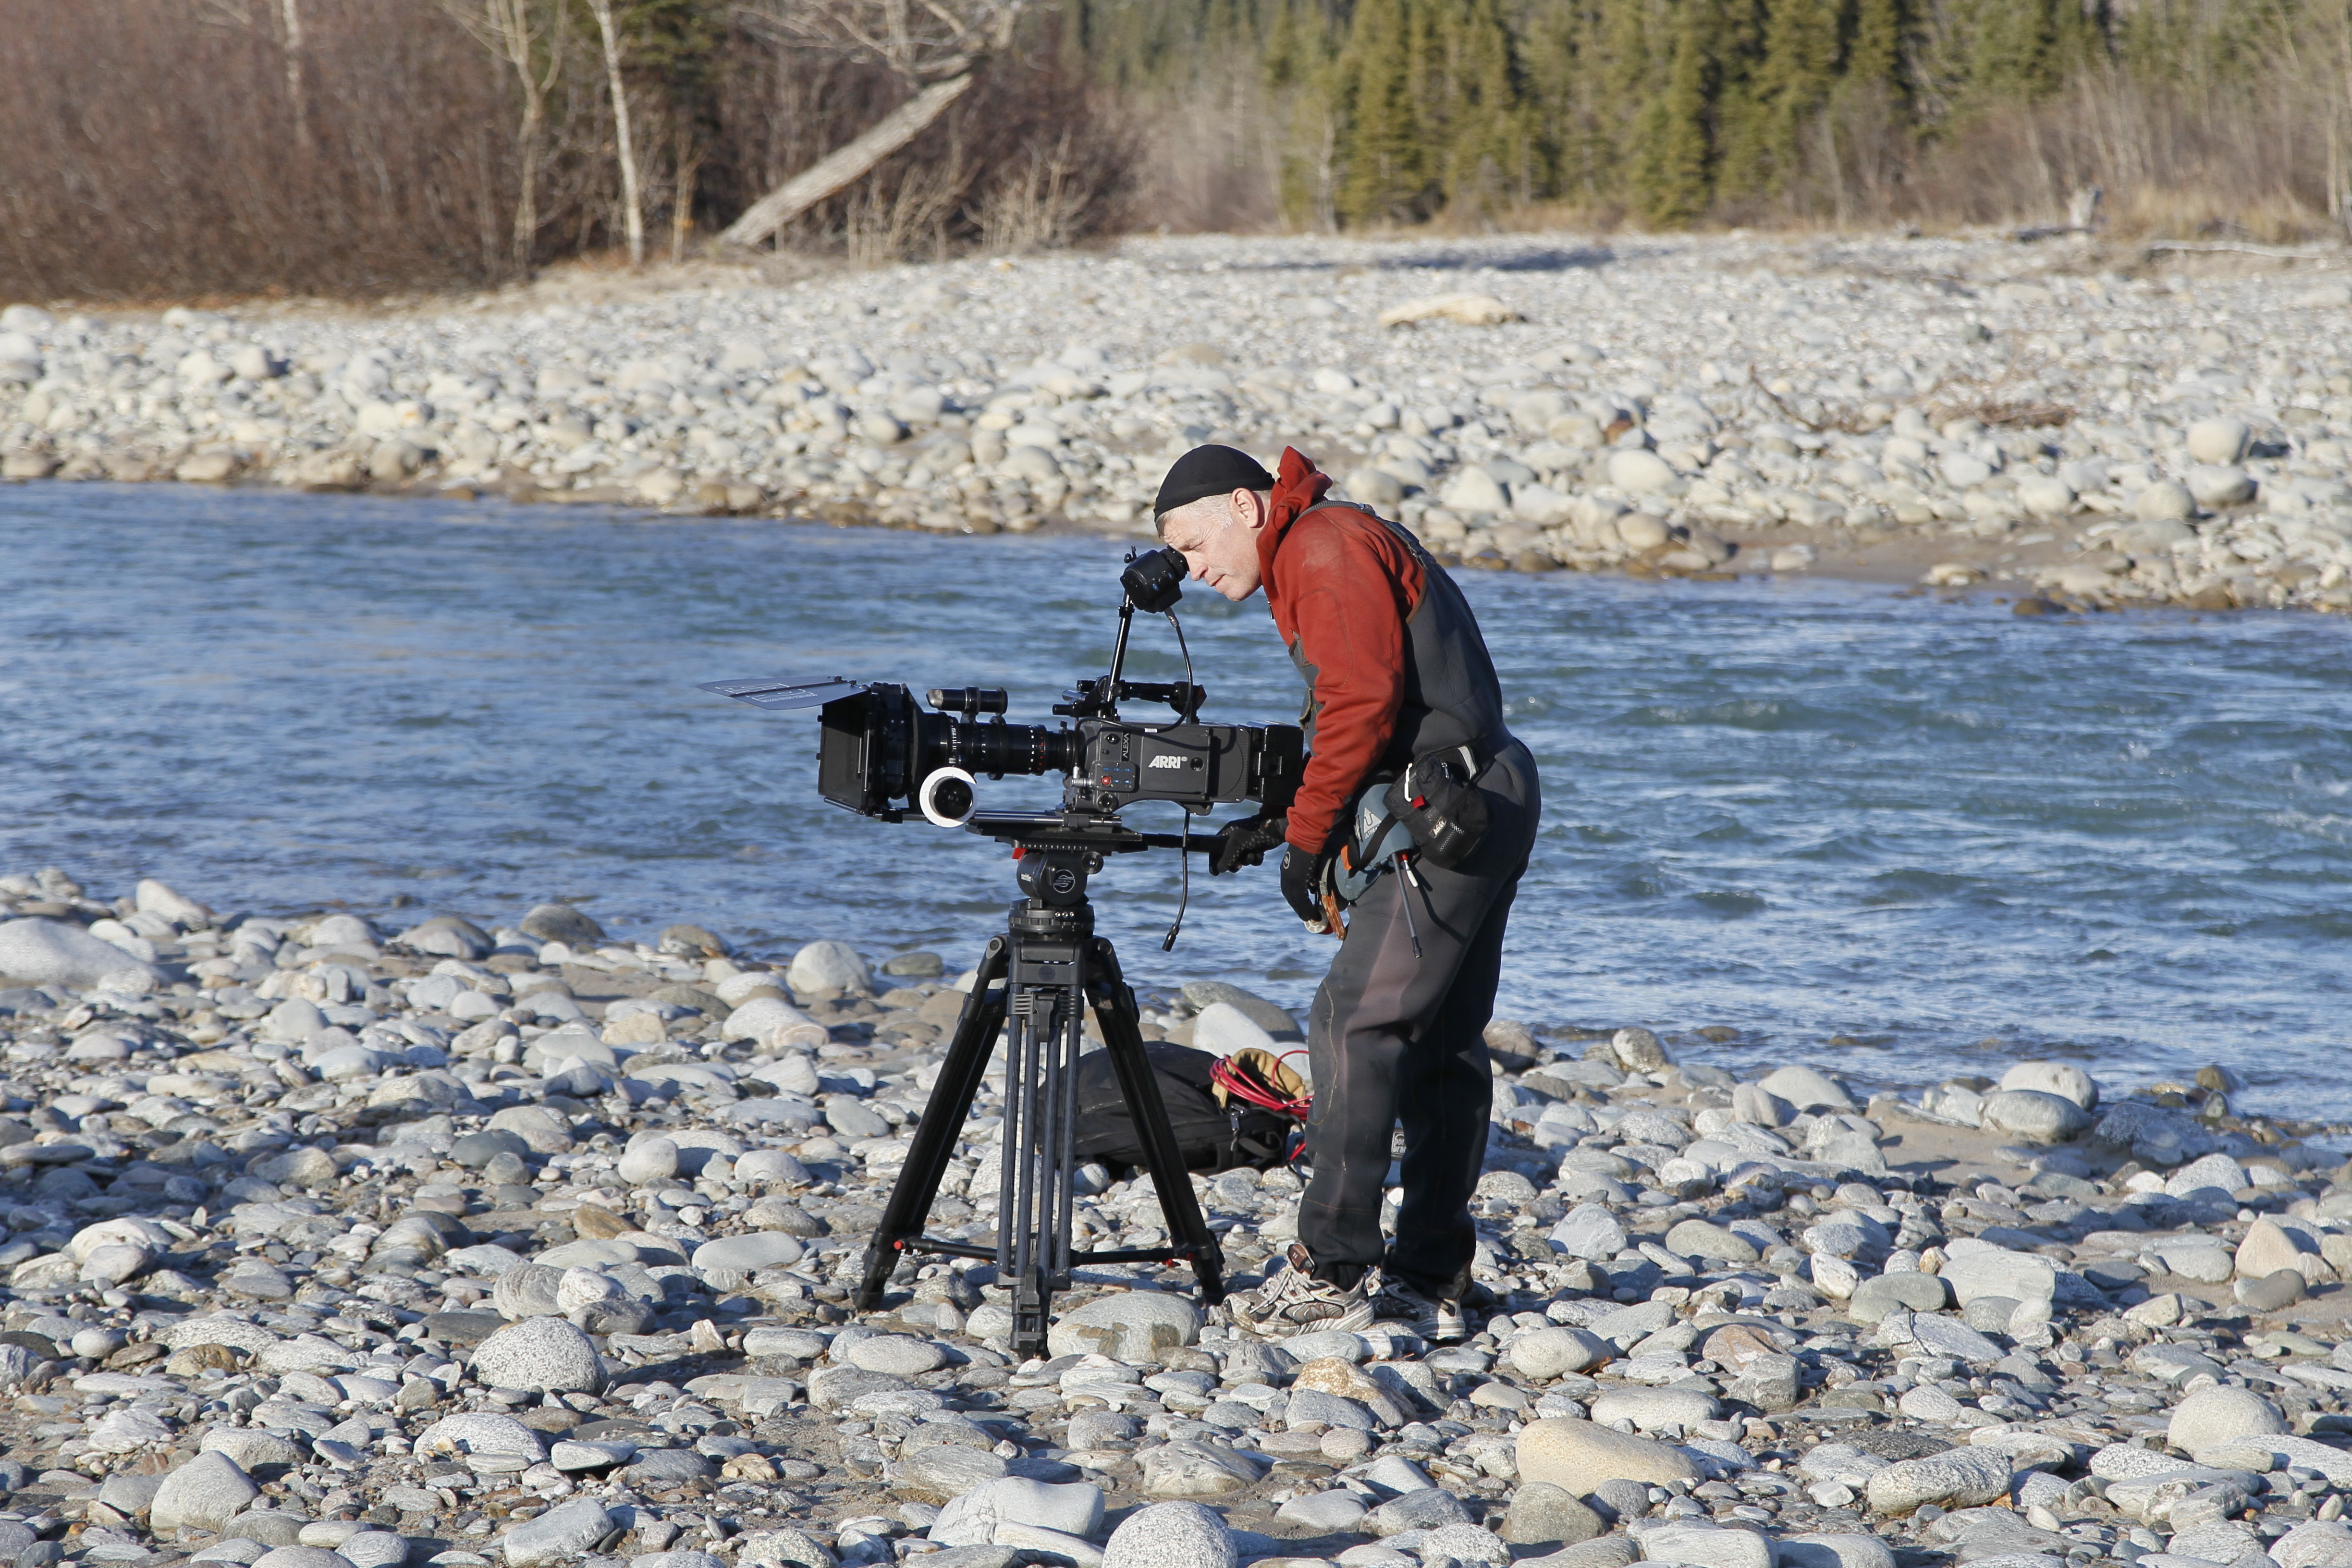 Lining up camera position on set of Love of Life. Delta, Alaska 2011